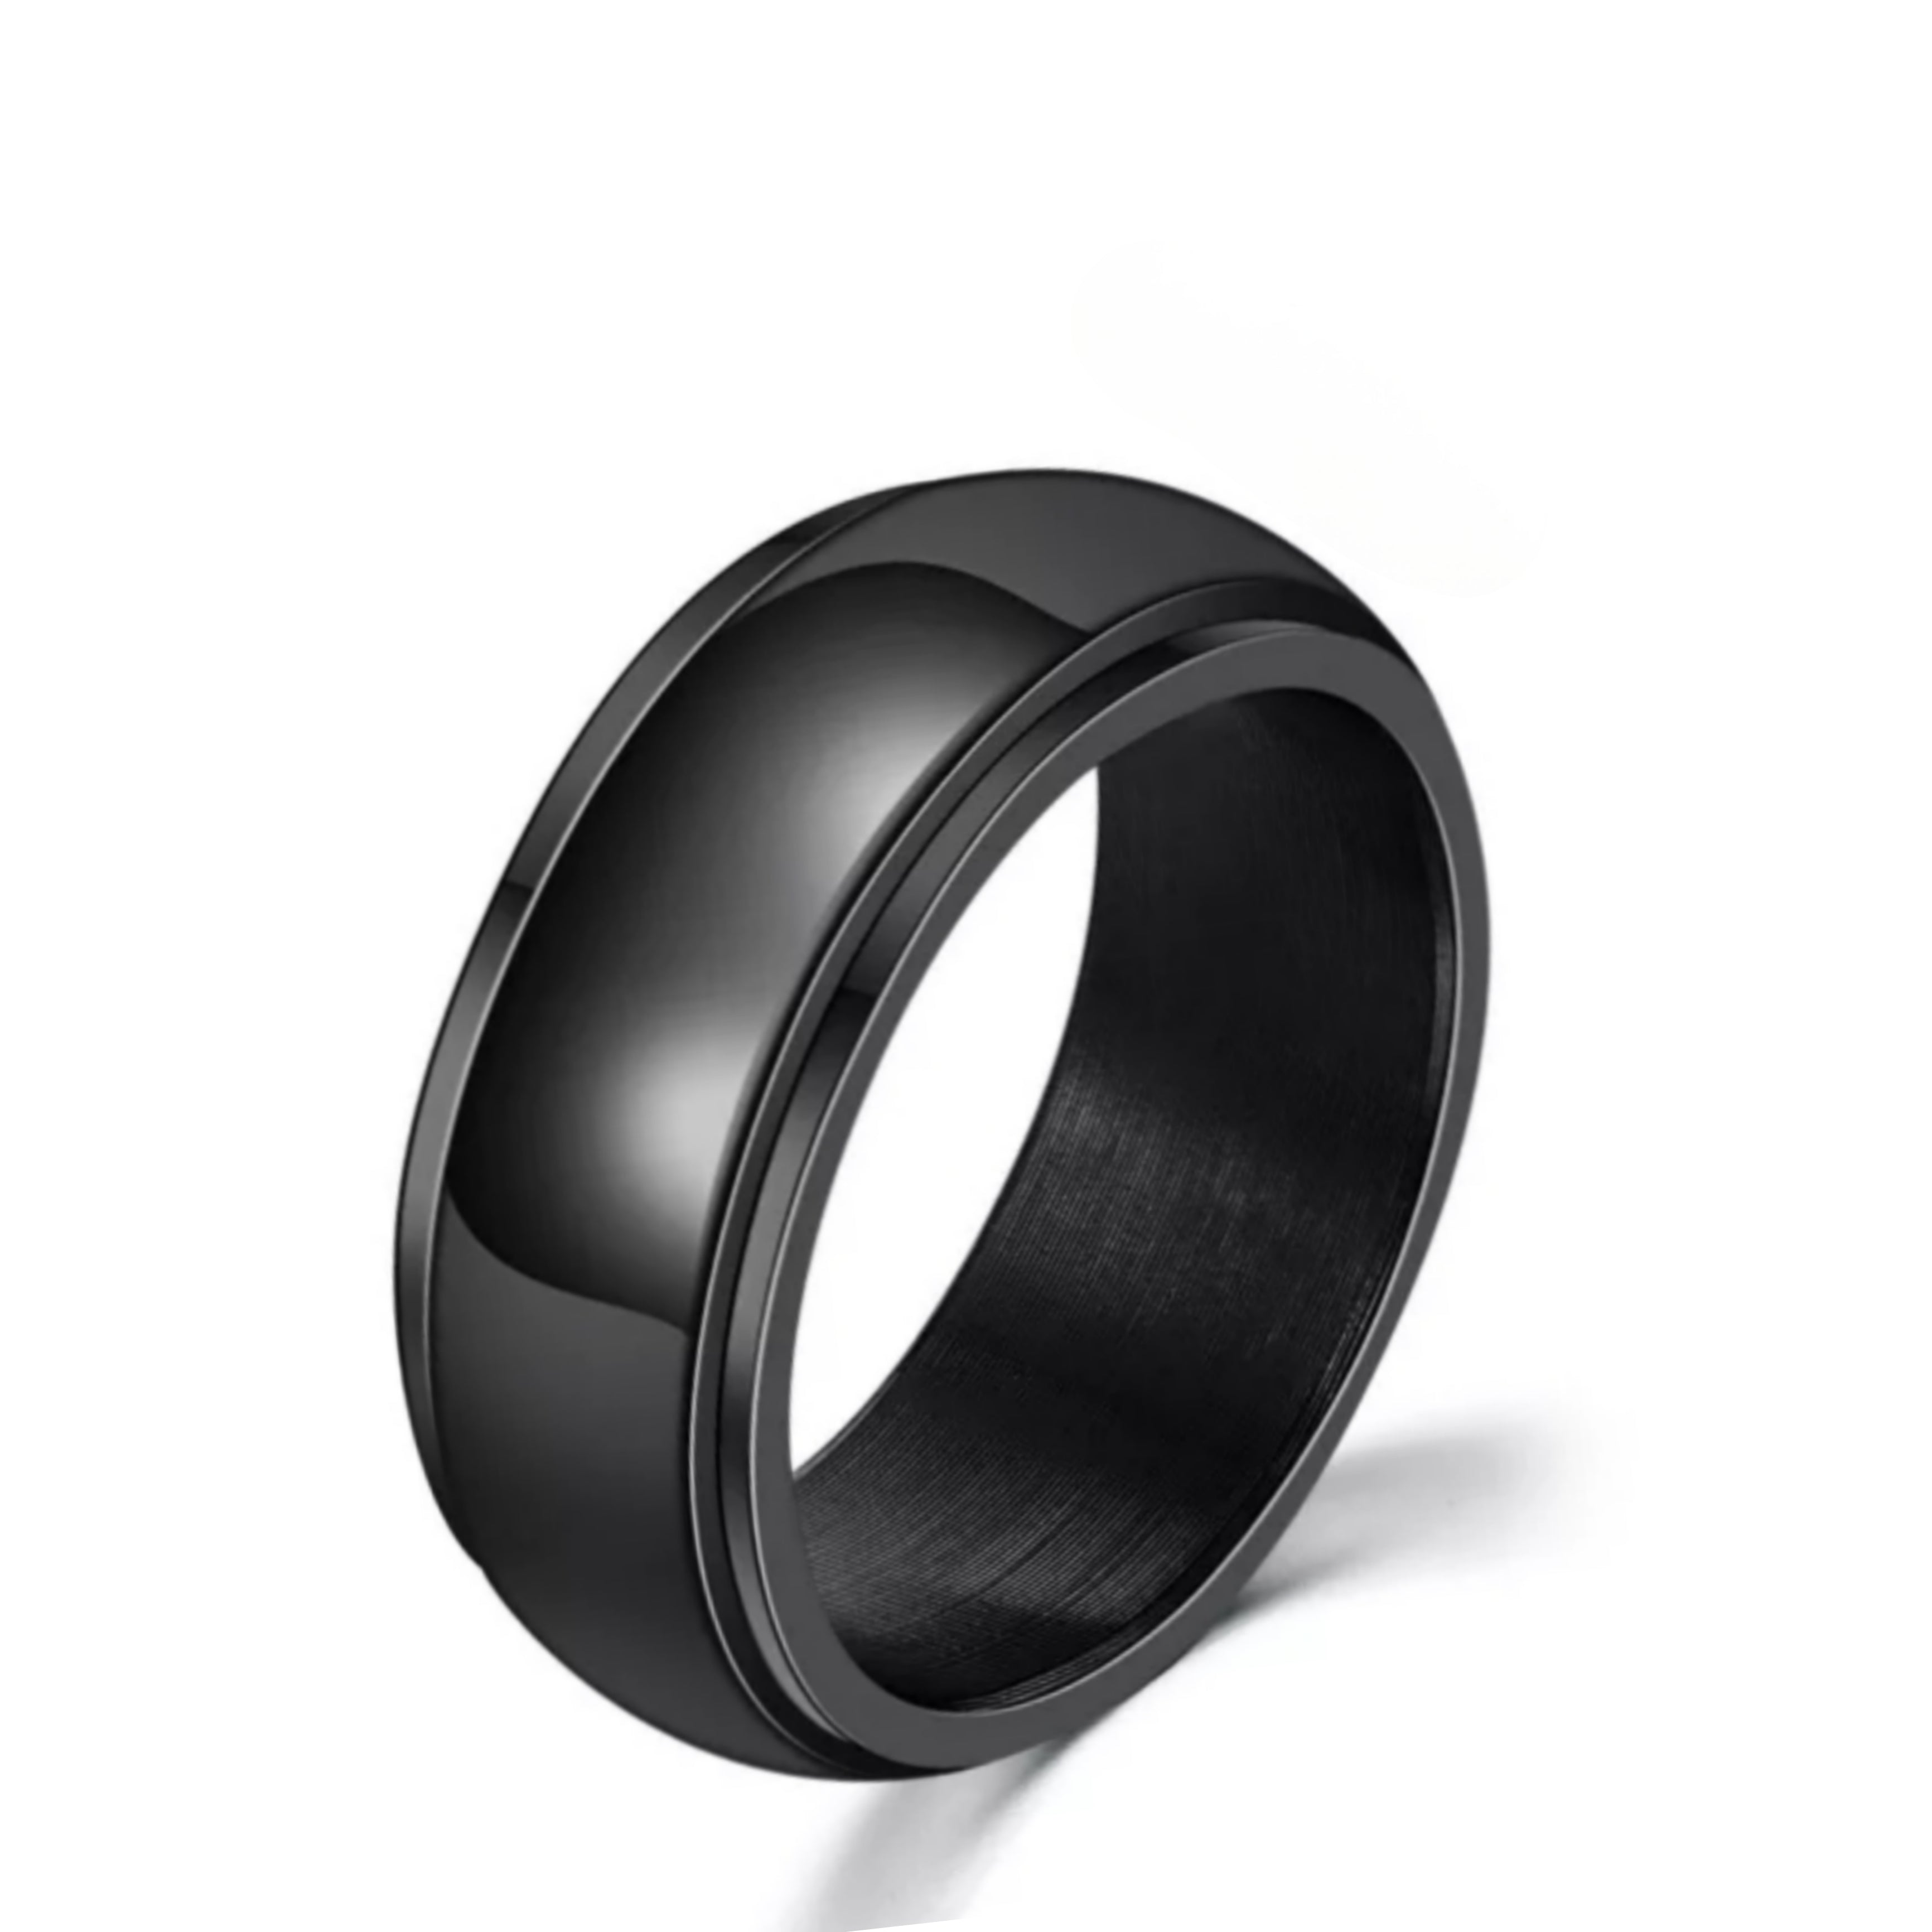 Yin yang - Spinning fidget ring